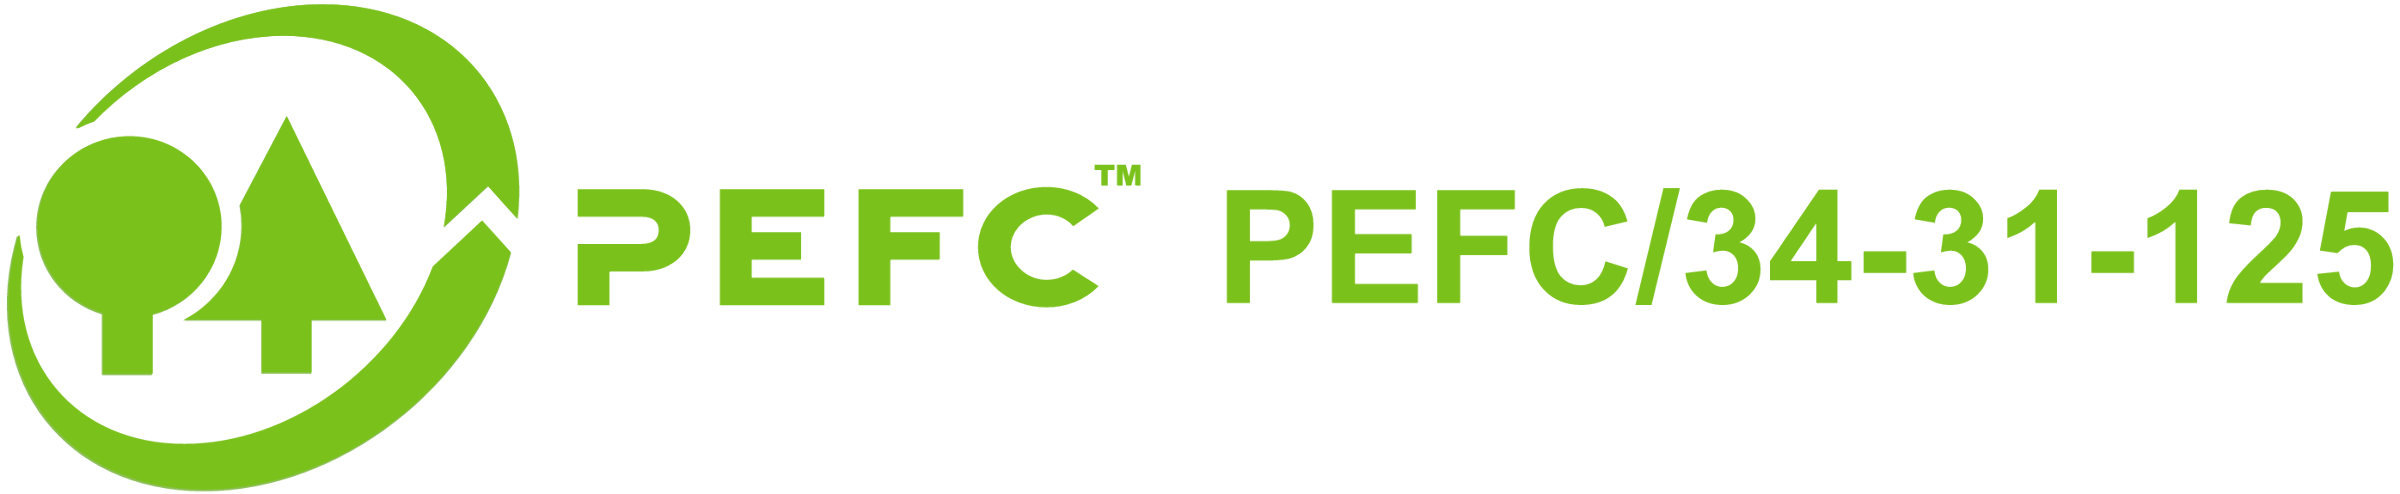 pefc logo paint